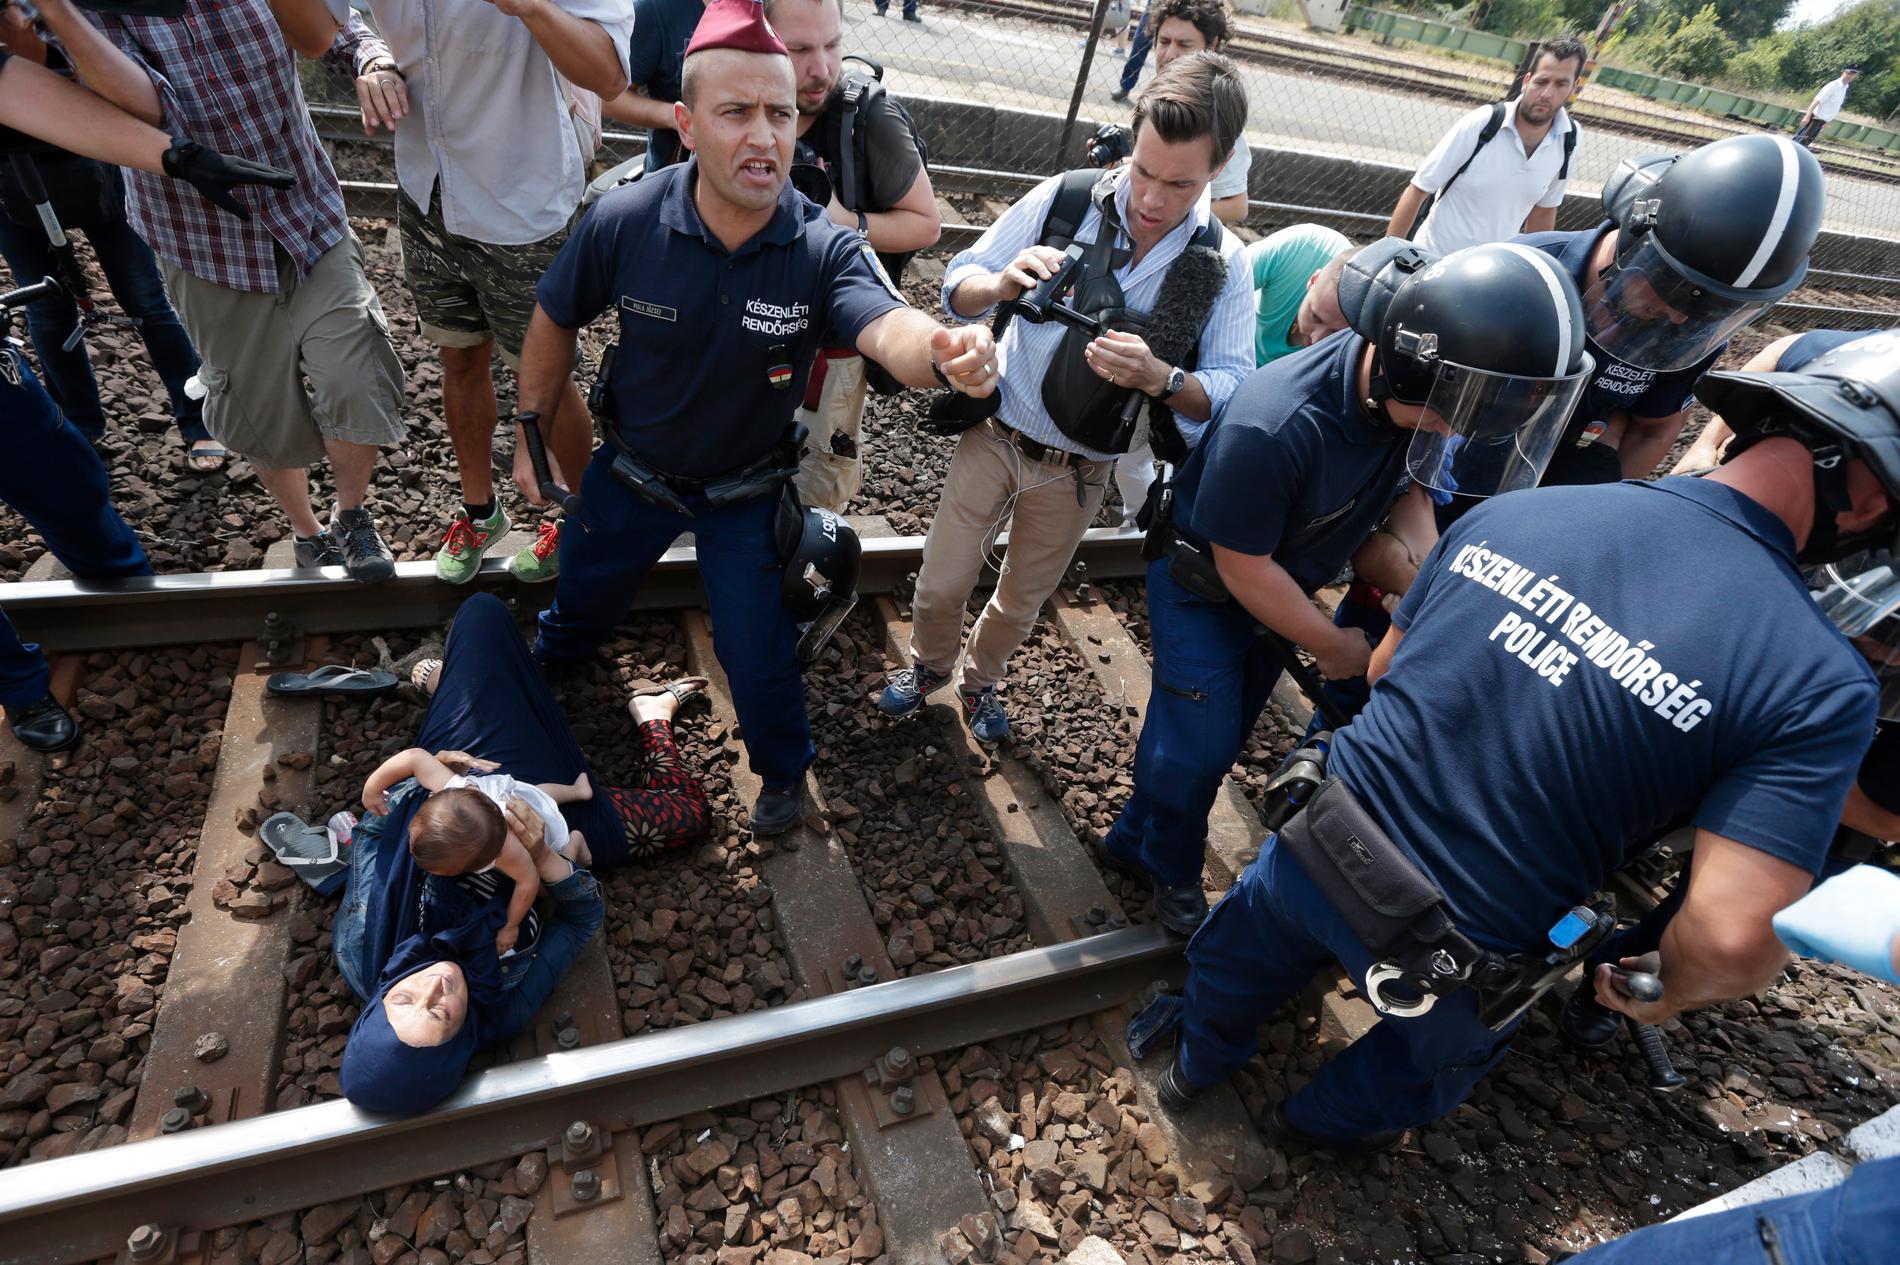 En flyktingfamilj försöker fly från polisen sedan de tvingats av tåget i den ungerska staden Bicske, knappt fyra mil väster om Budapest.